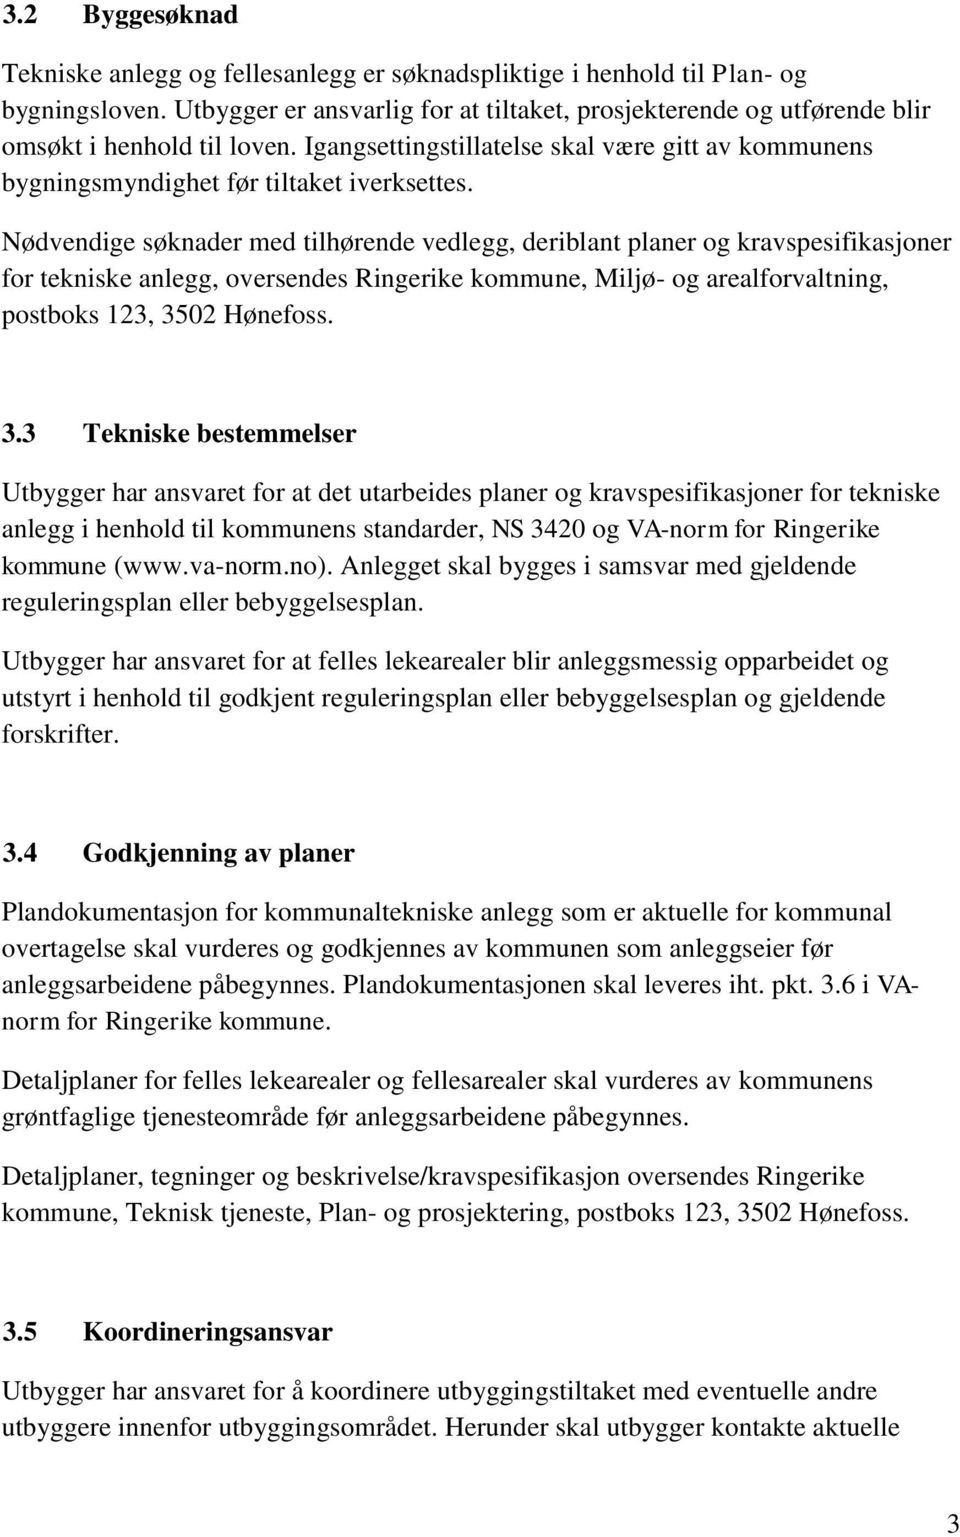 Nødvendige søknader med tilhørende vedlegg, deriblant planer og kravspesifikasjoner for tekniske anlegg, oversendes Ringerike kommune, Miljø- og arealforvaltning, postboks 123, 35